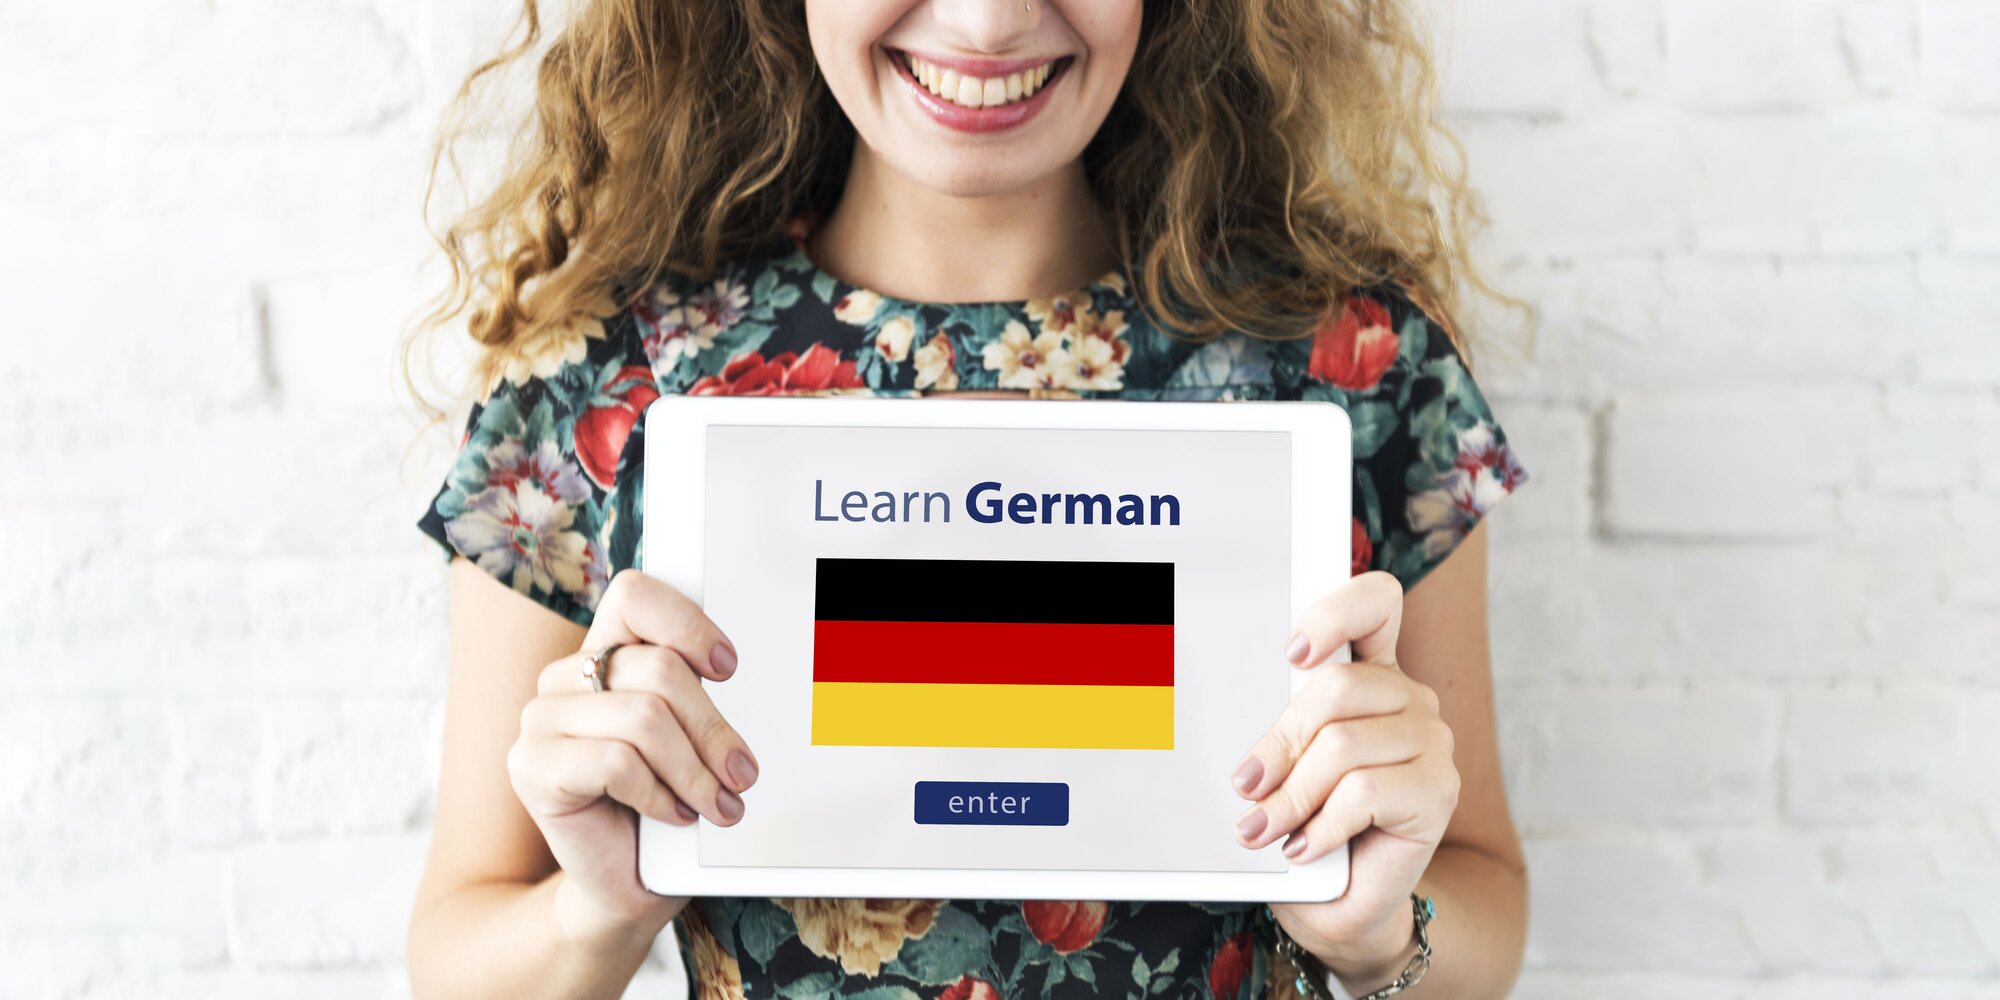 Сделать по немецкому по фото. Learn German. Немецкий язык фото. Learn German language. Студенты за границей.